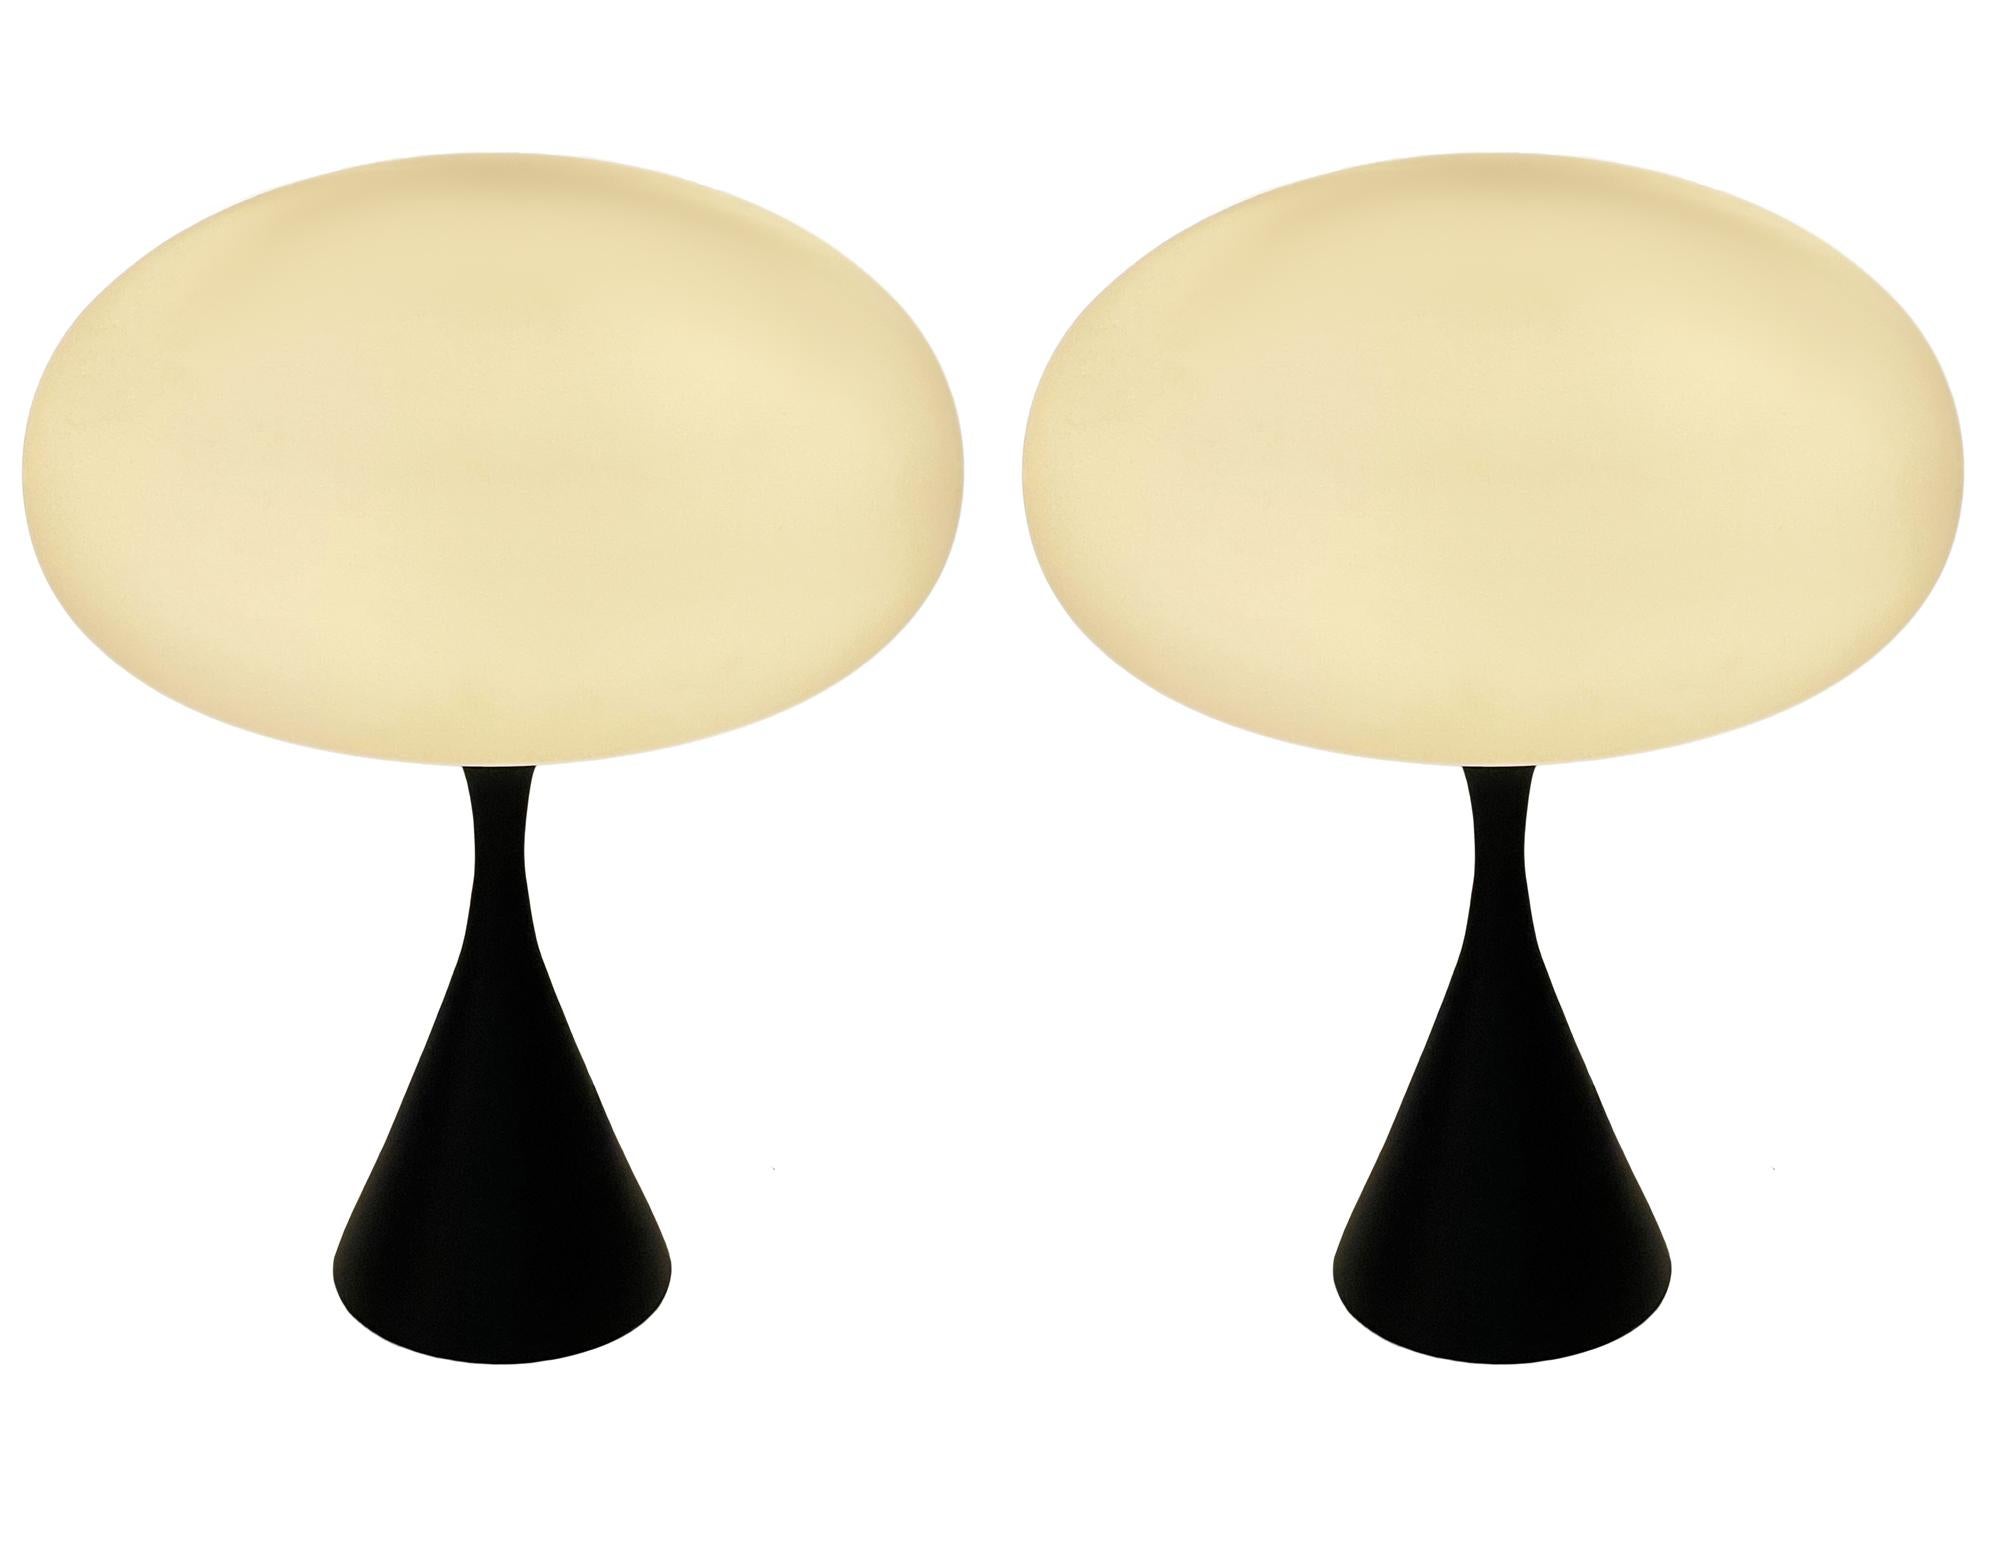 Une belle paire de lampes de table assorties en forme de champignon conique d'après Laurel Lamp Company. La lampe comporte une base en aluminium moulé avec un revêtement en poudre noir satiné et un abat-jour en verre dépoli soufflé à la bouche. Le